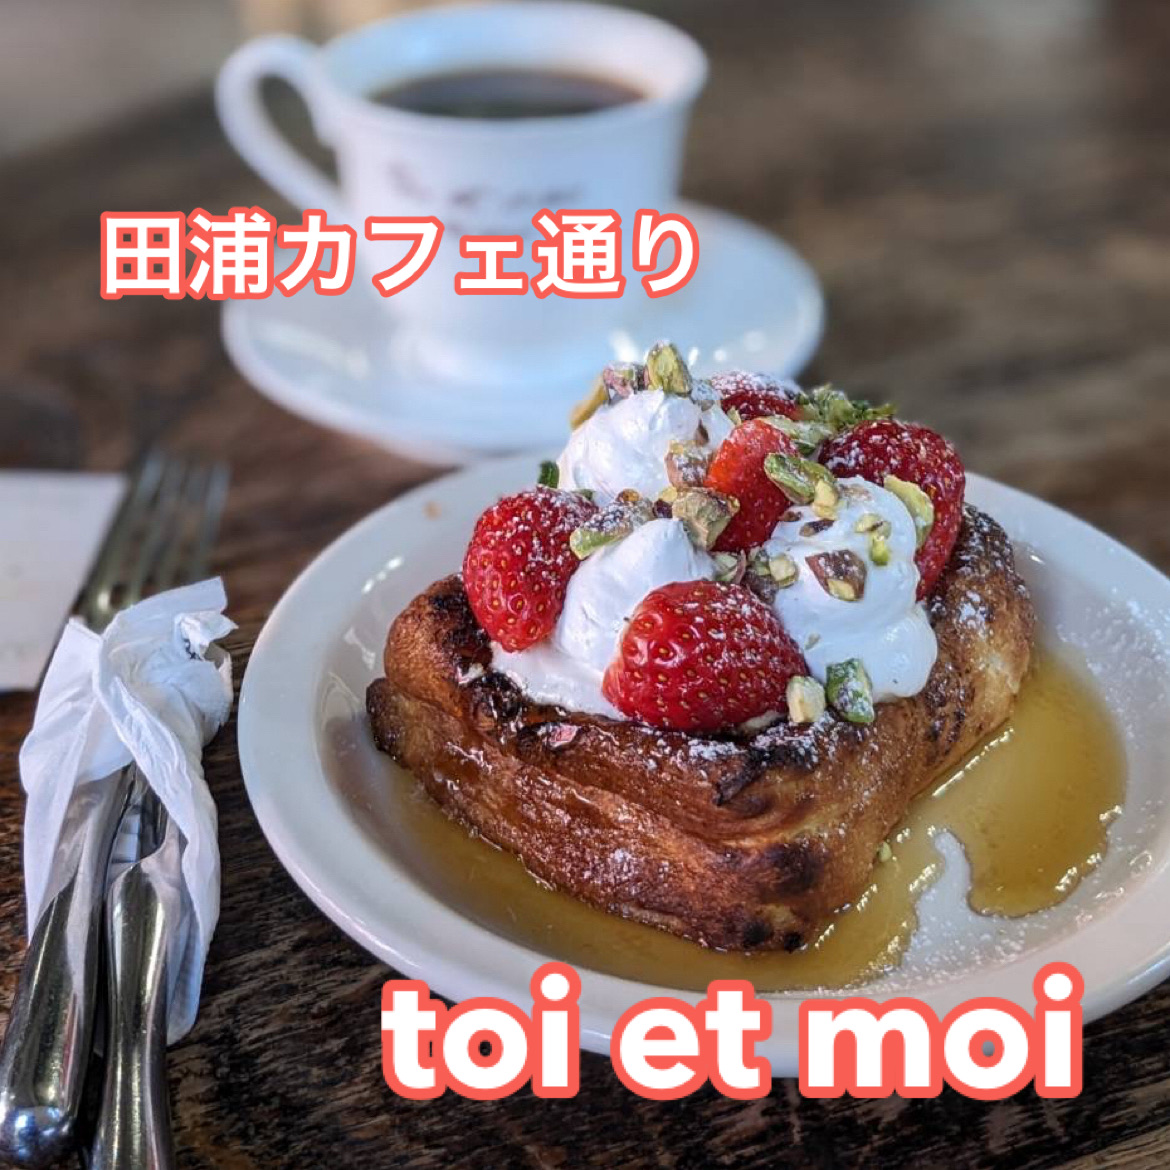 [釜山] Taura Cafe Street可爱的咖啡馆💕 toi et moi